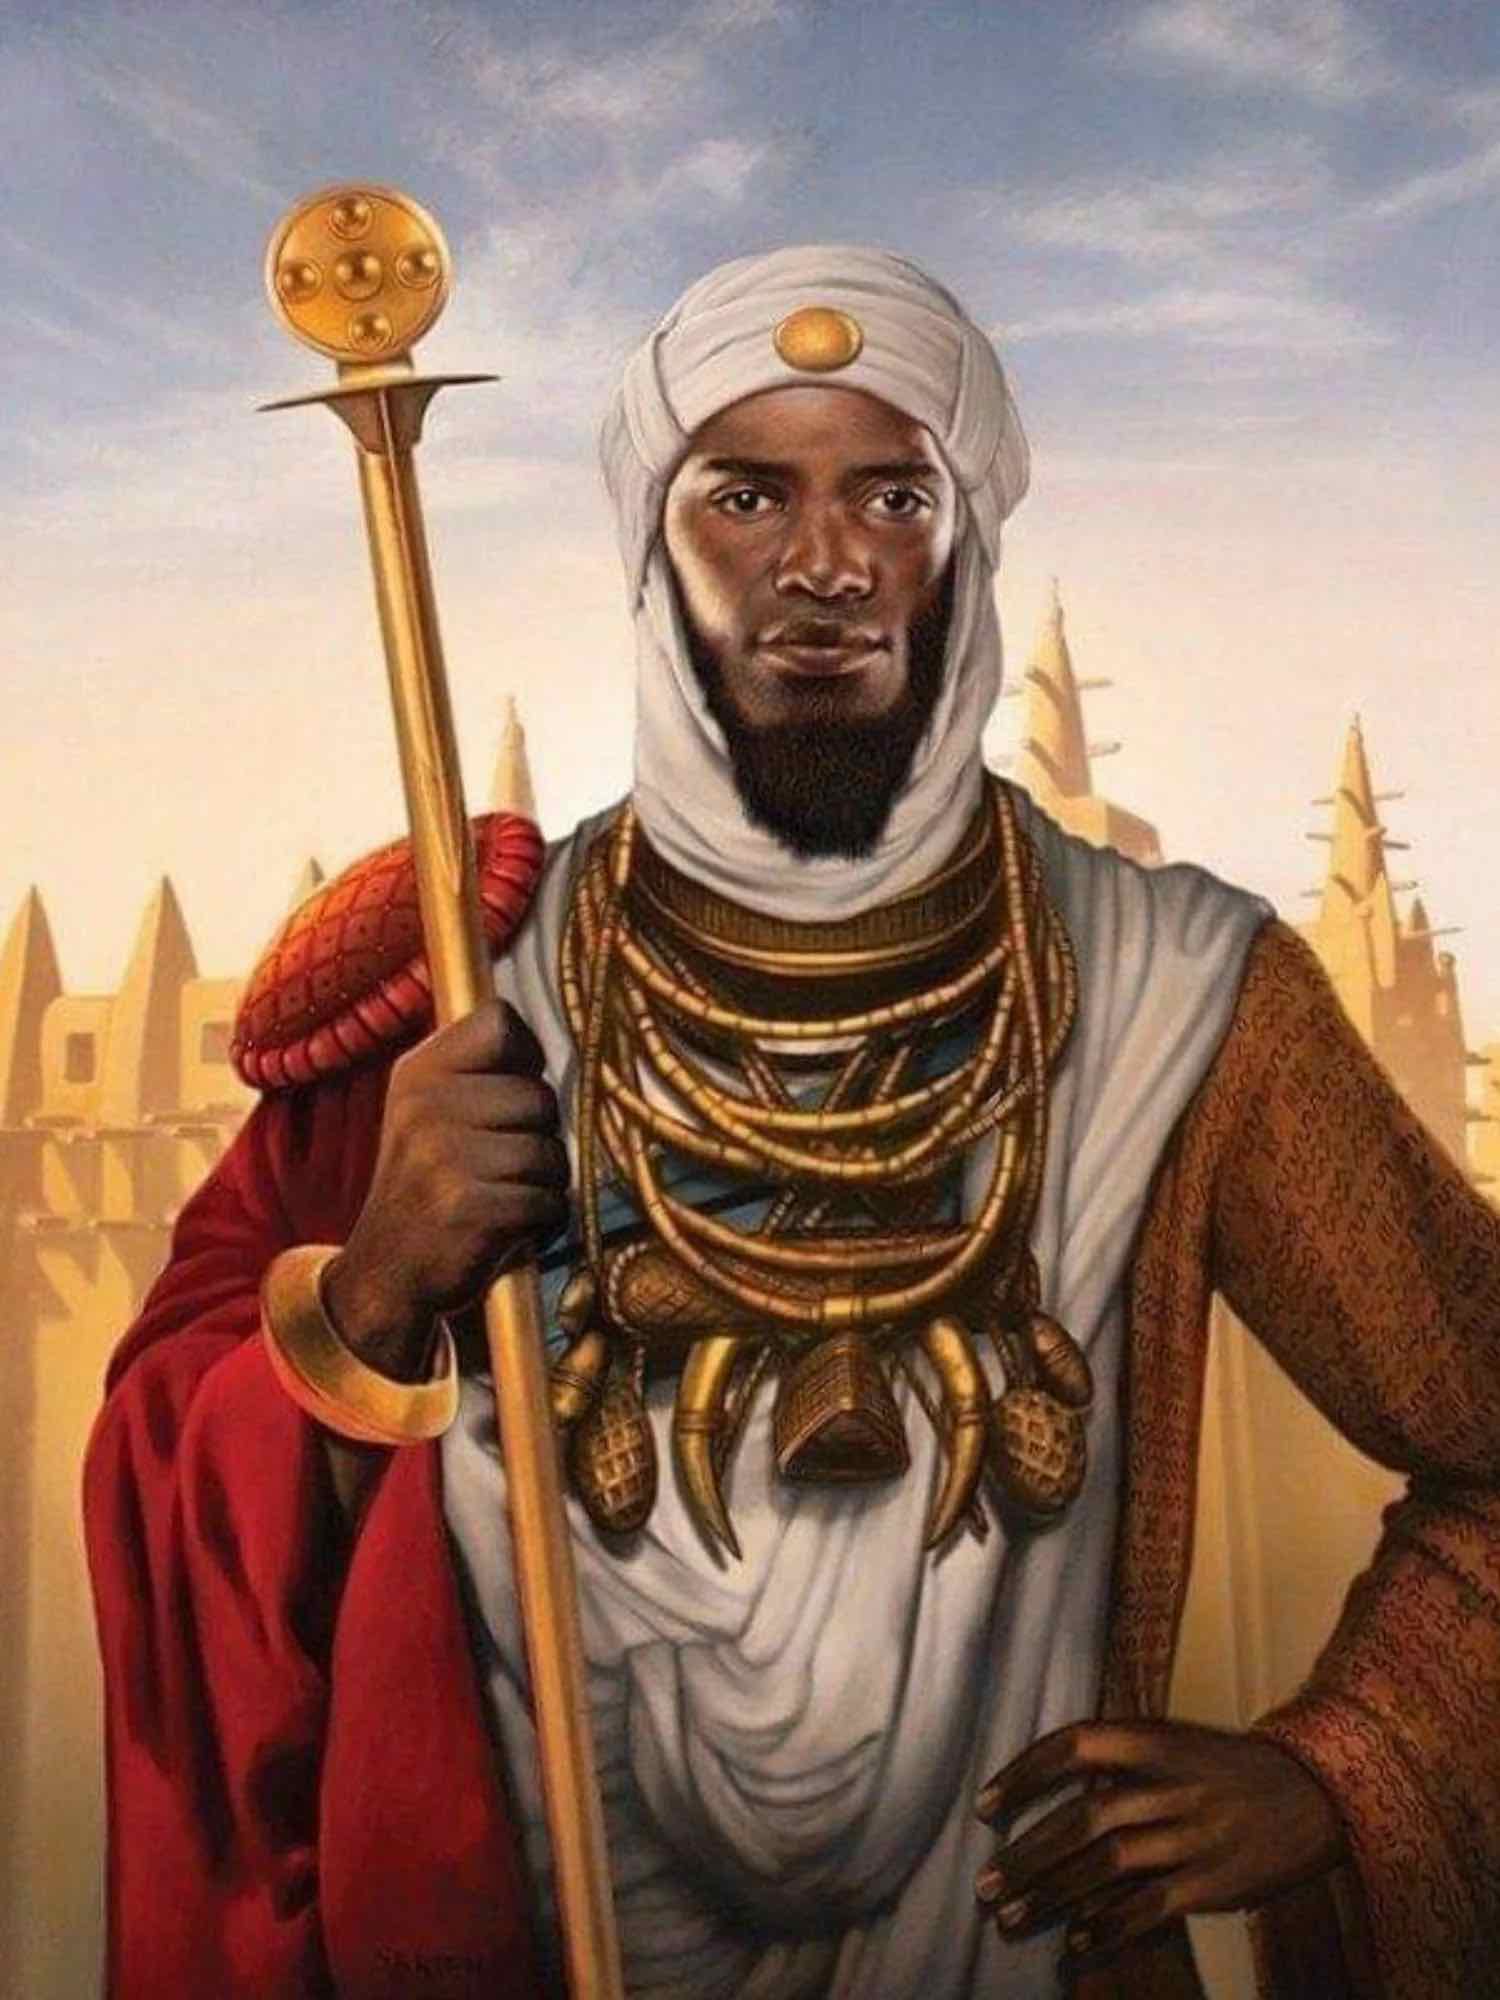 Mansa Musa es considerado el hombre más rico que jamás haya existido, según los historiadores